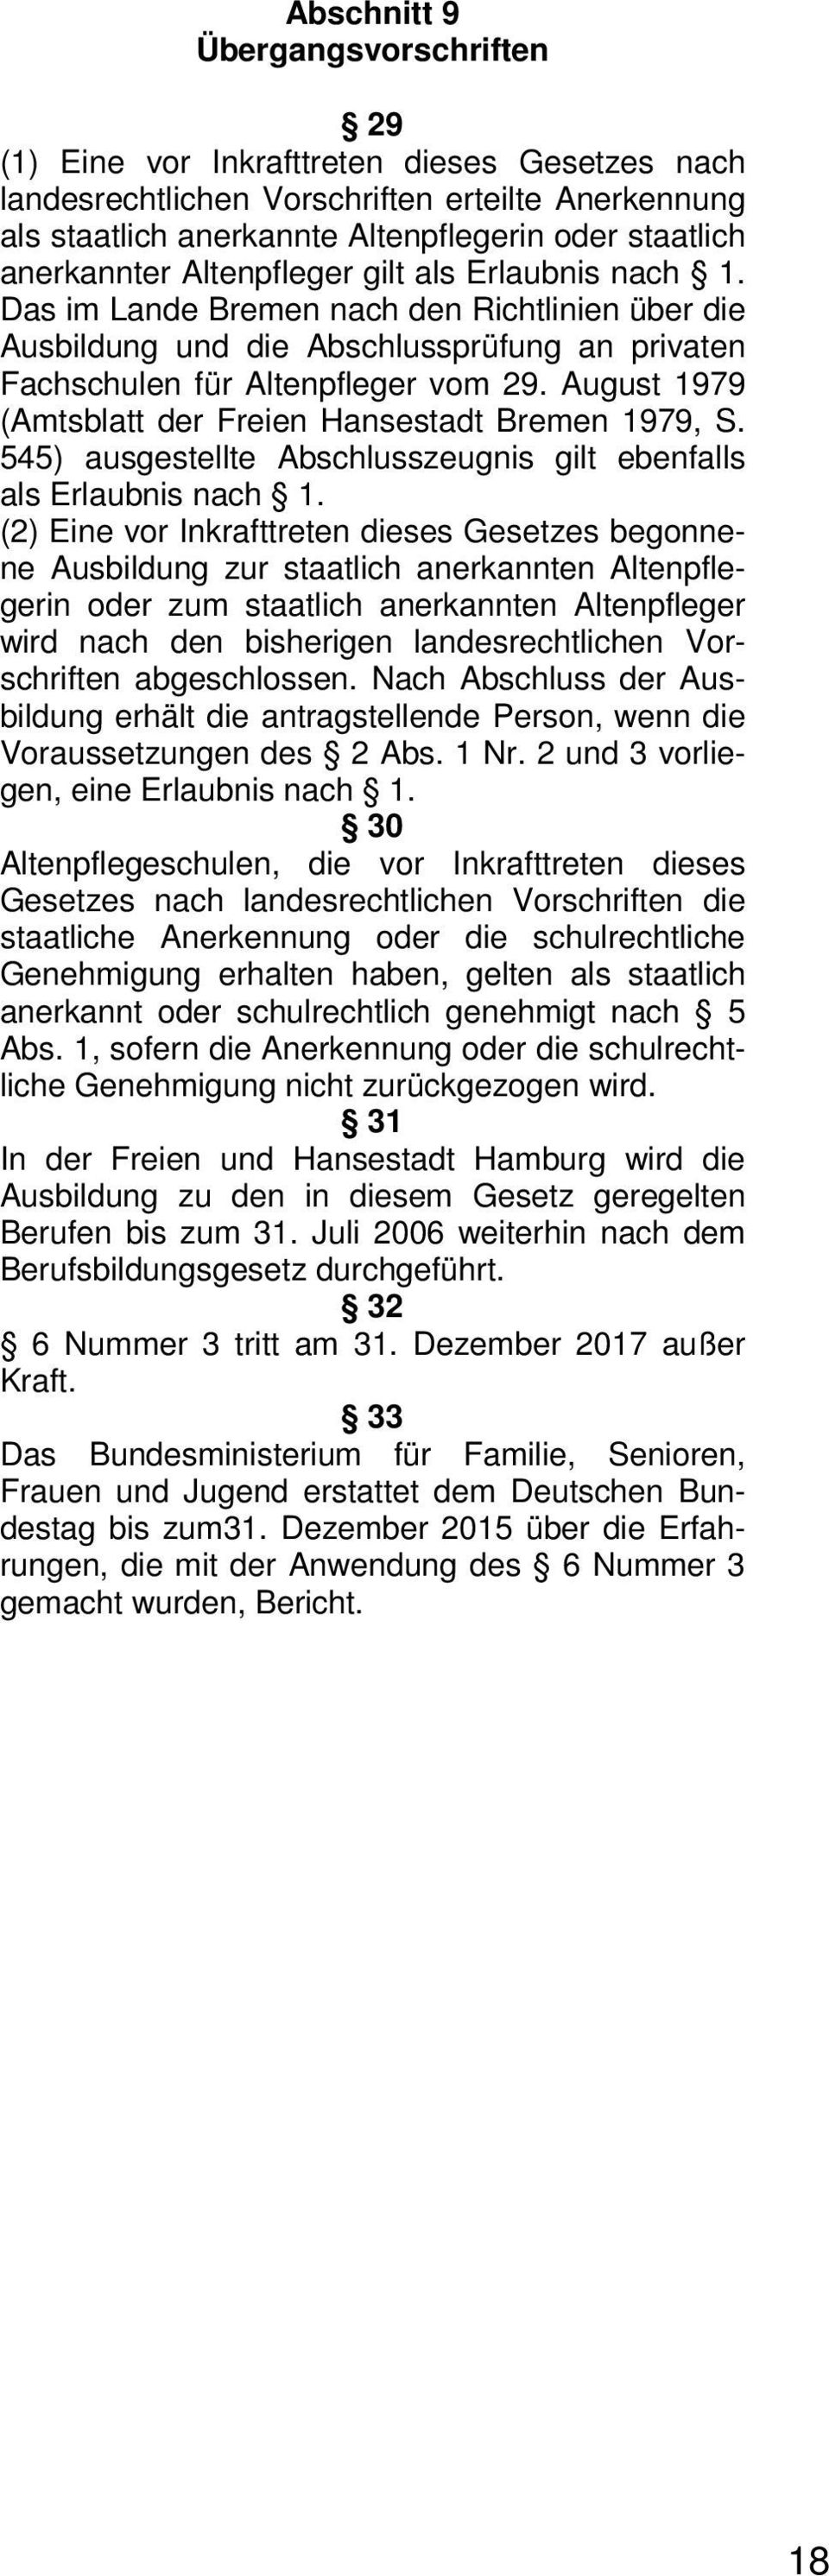 August 1979 (Amtsblatt der Freien Hansestadt Bremen 1979, S. 545) ausgestellte Abschlusszeugnis gilt ebenfalls als Erlaubnis nach 1.